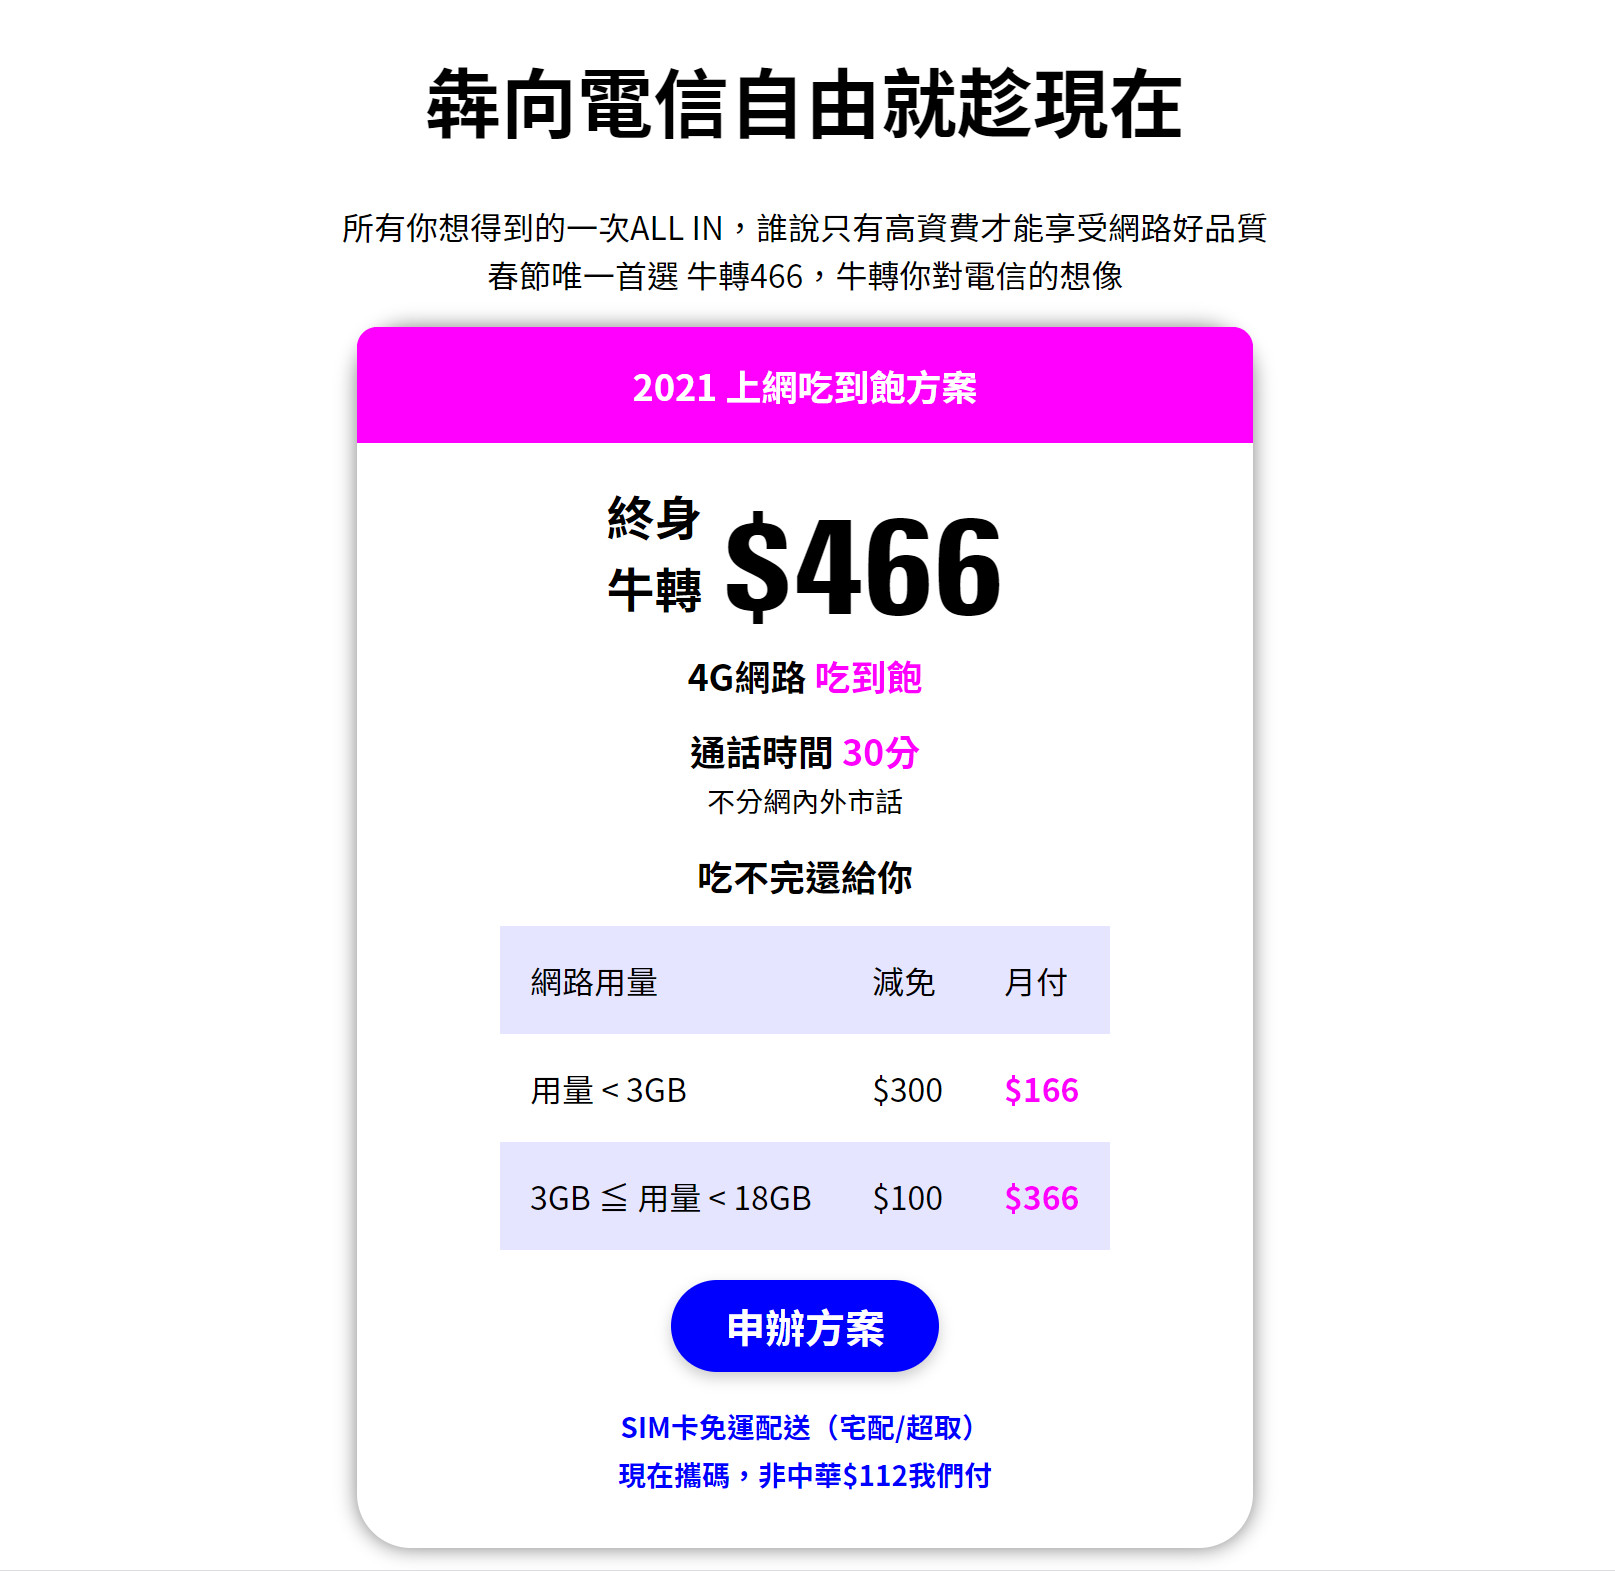 【無框行動】新春專案，中華電信大4G網路吃到飽466元，低流量只要166元!超適合搭配台灣之星雙11專案。 - 中華電信資費最便宜 - 敗家達人推薦